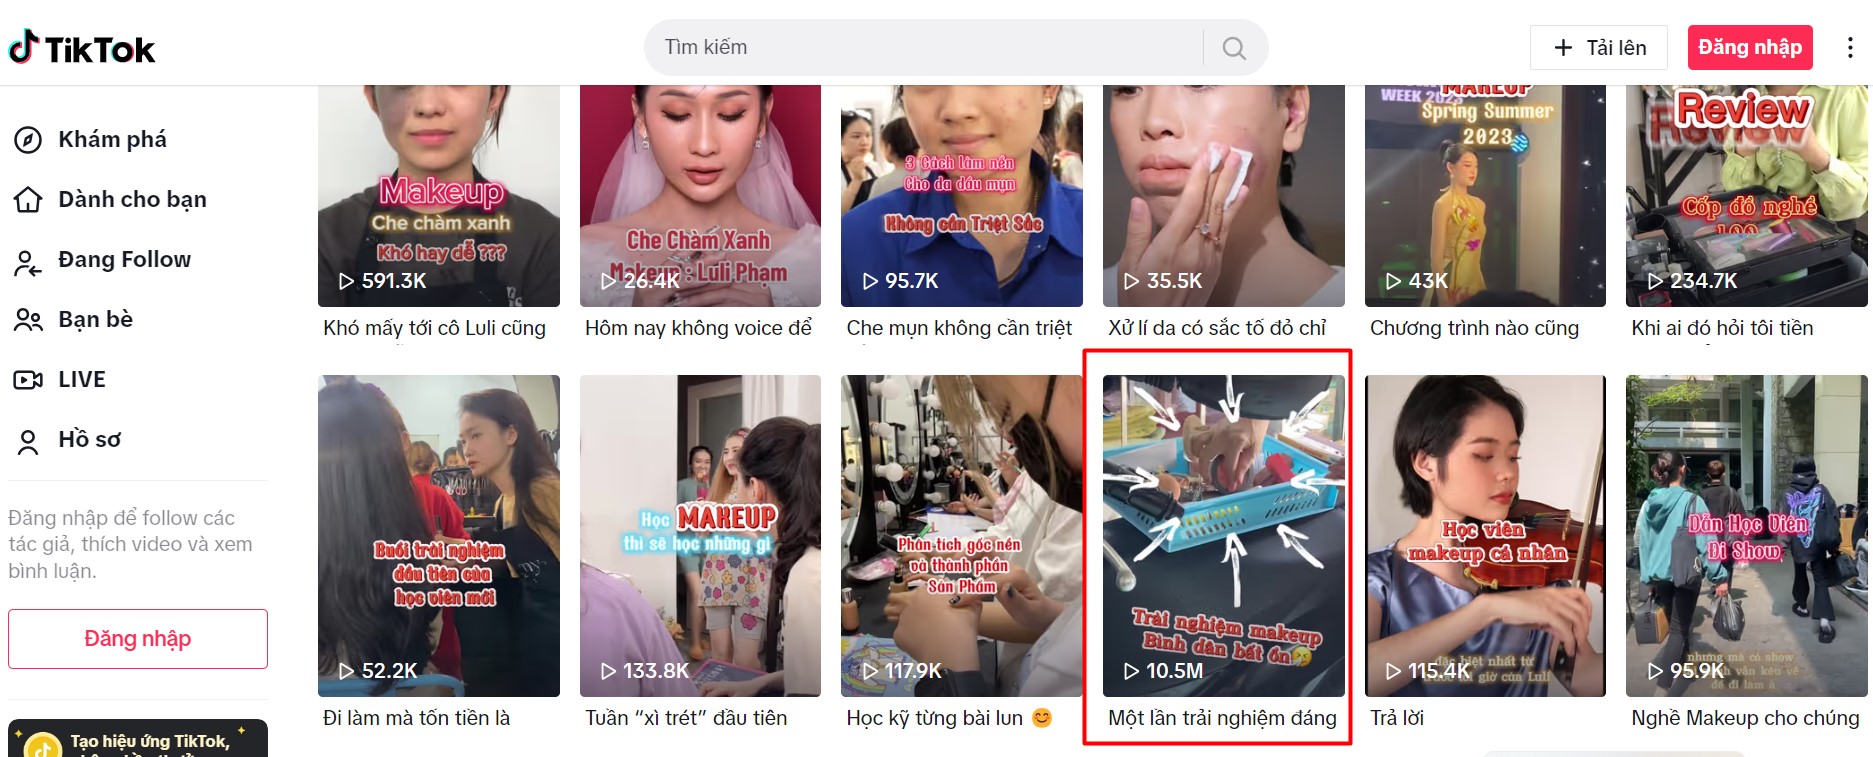 Makeup Artist Luli Phạm cùng những video viral triệu view trải nghiệm ' Makeup giá bình dân' tại các nước - ảnh 1